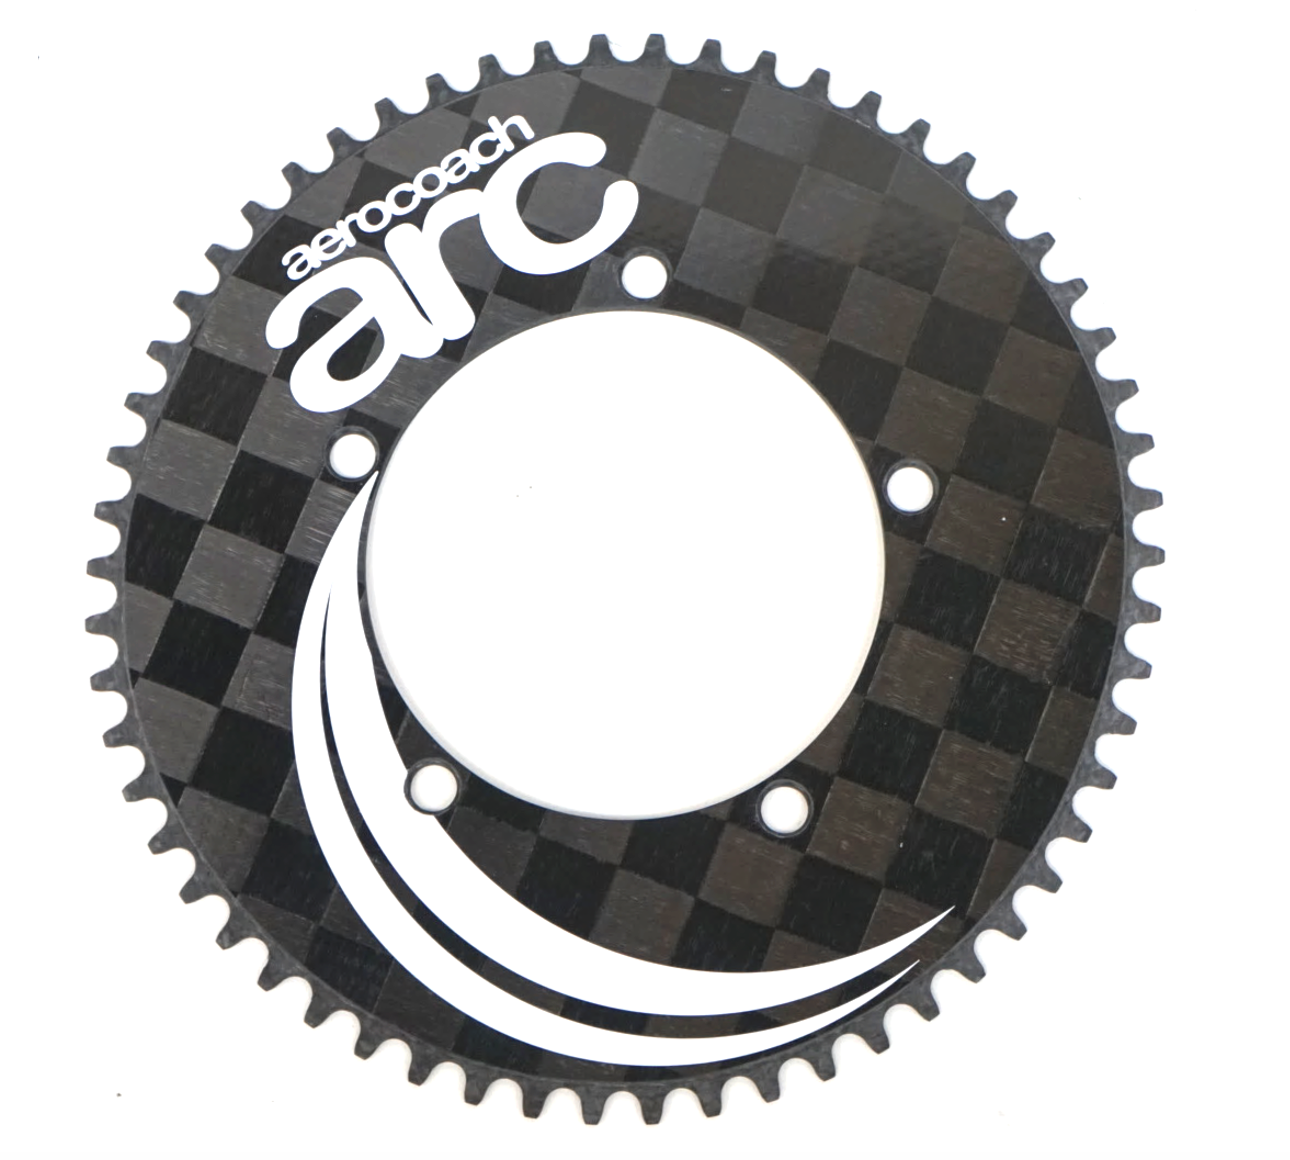 AeroCoach ARC 1x carbon chainrings